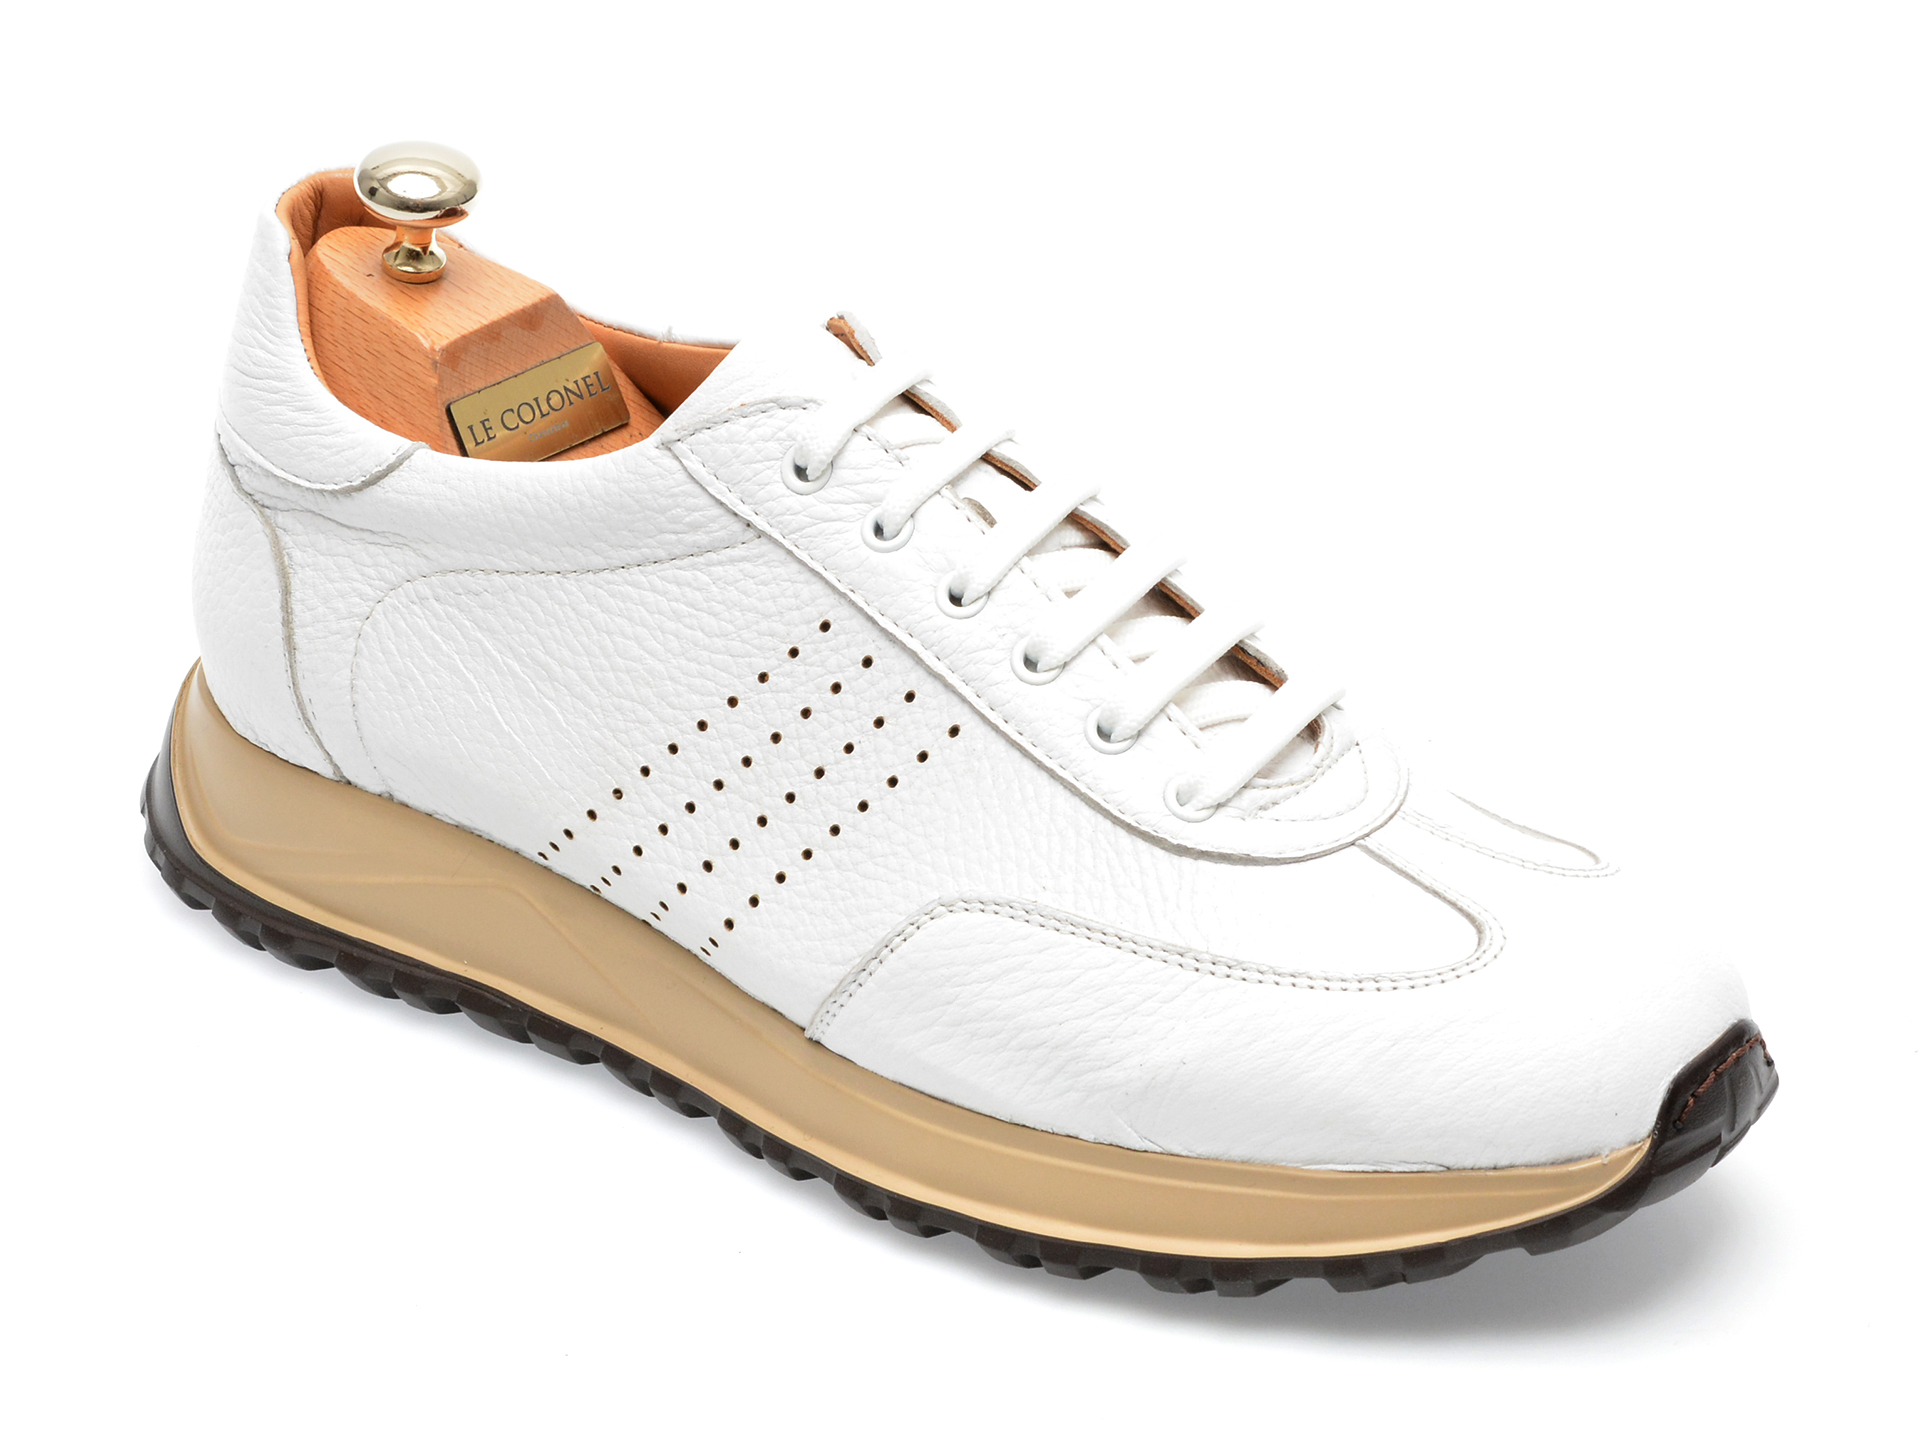 Pantofi LE COLONEL albi, 62818, din piele naturala Le Colonel imagine noua 2022